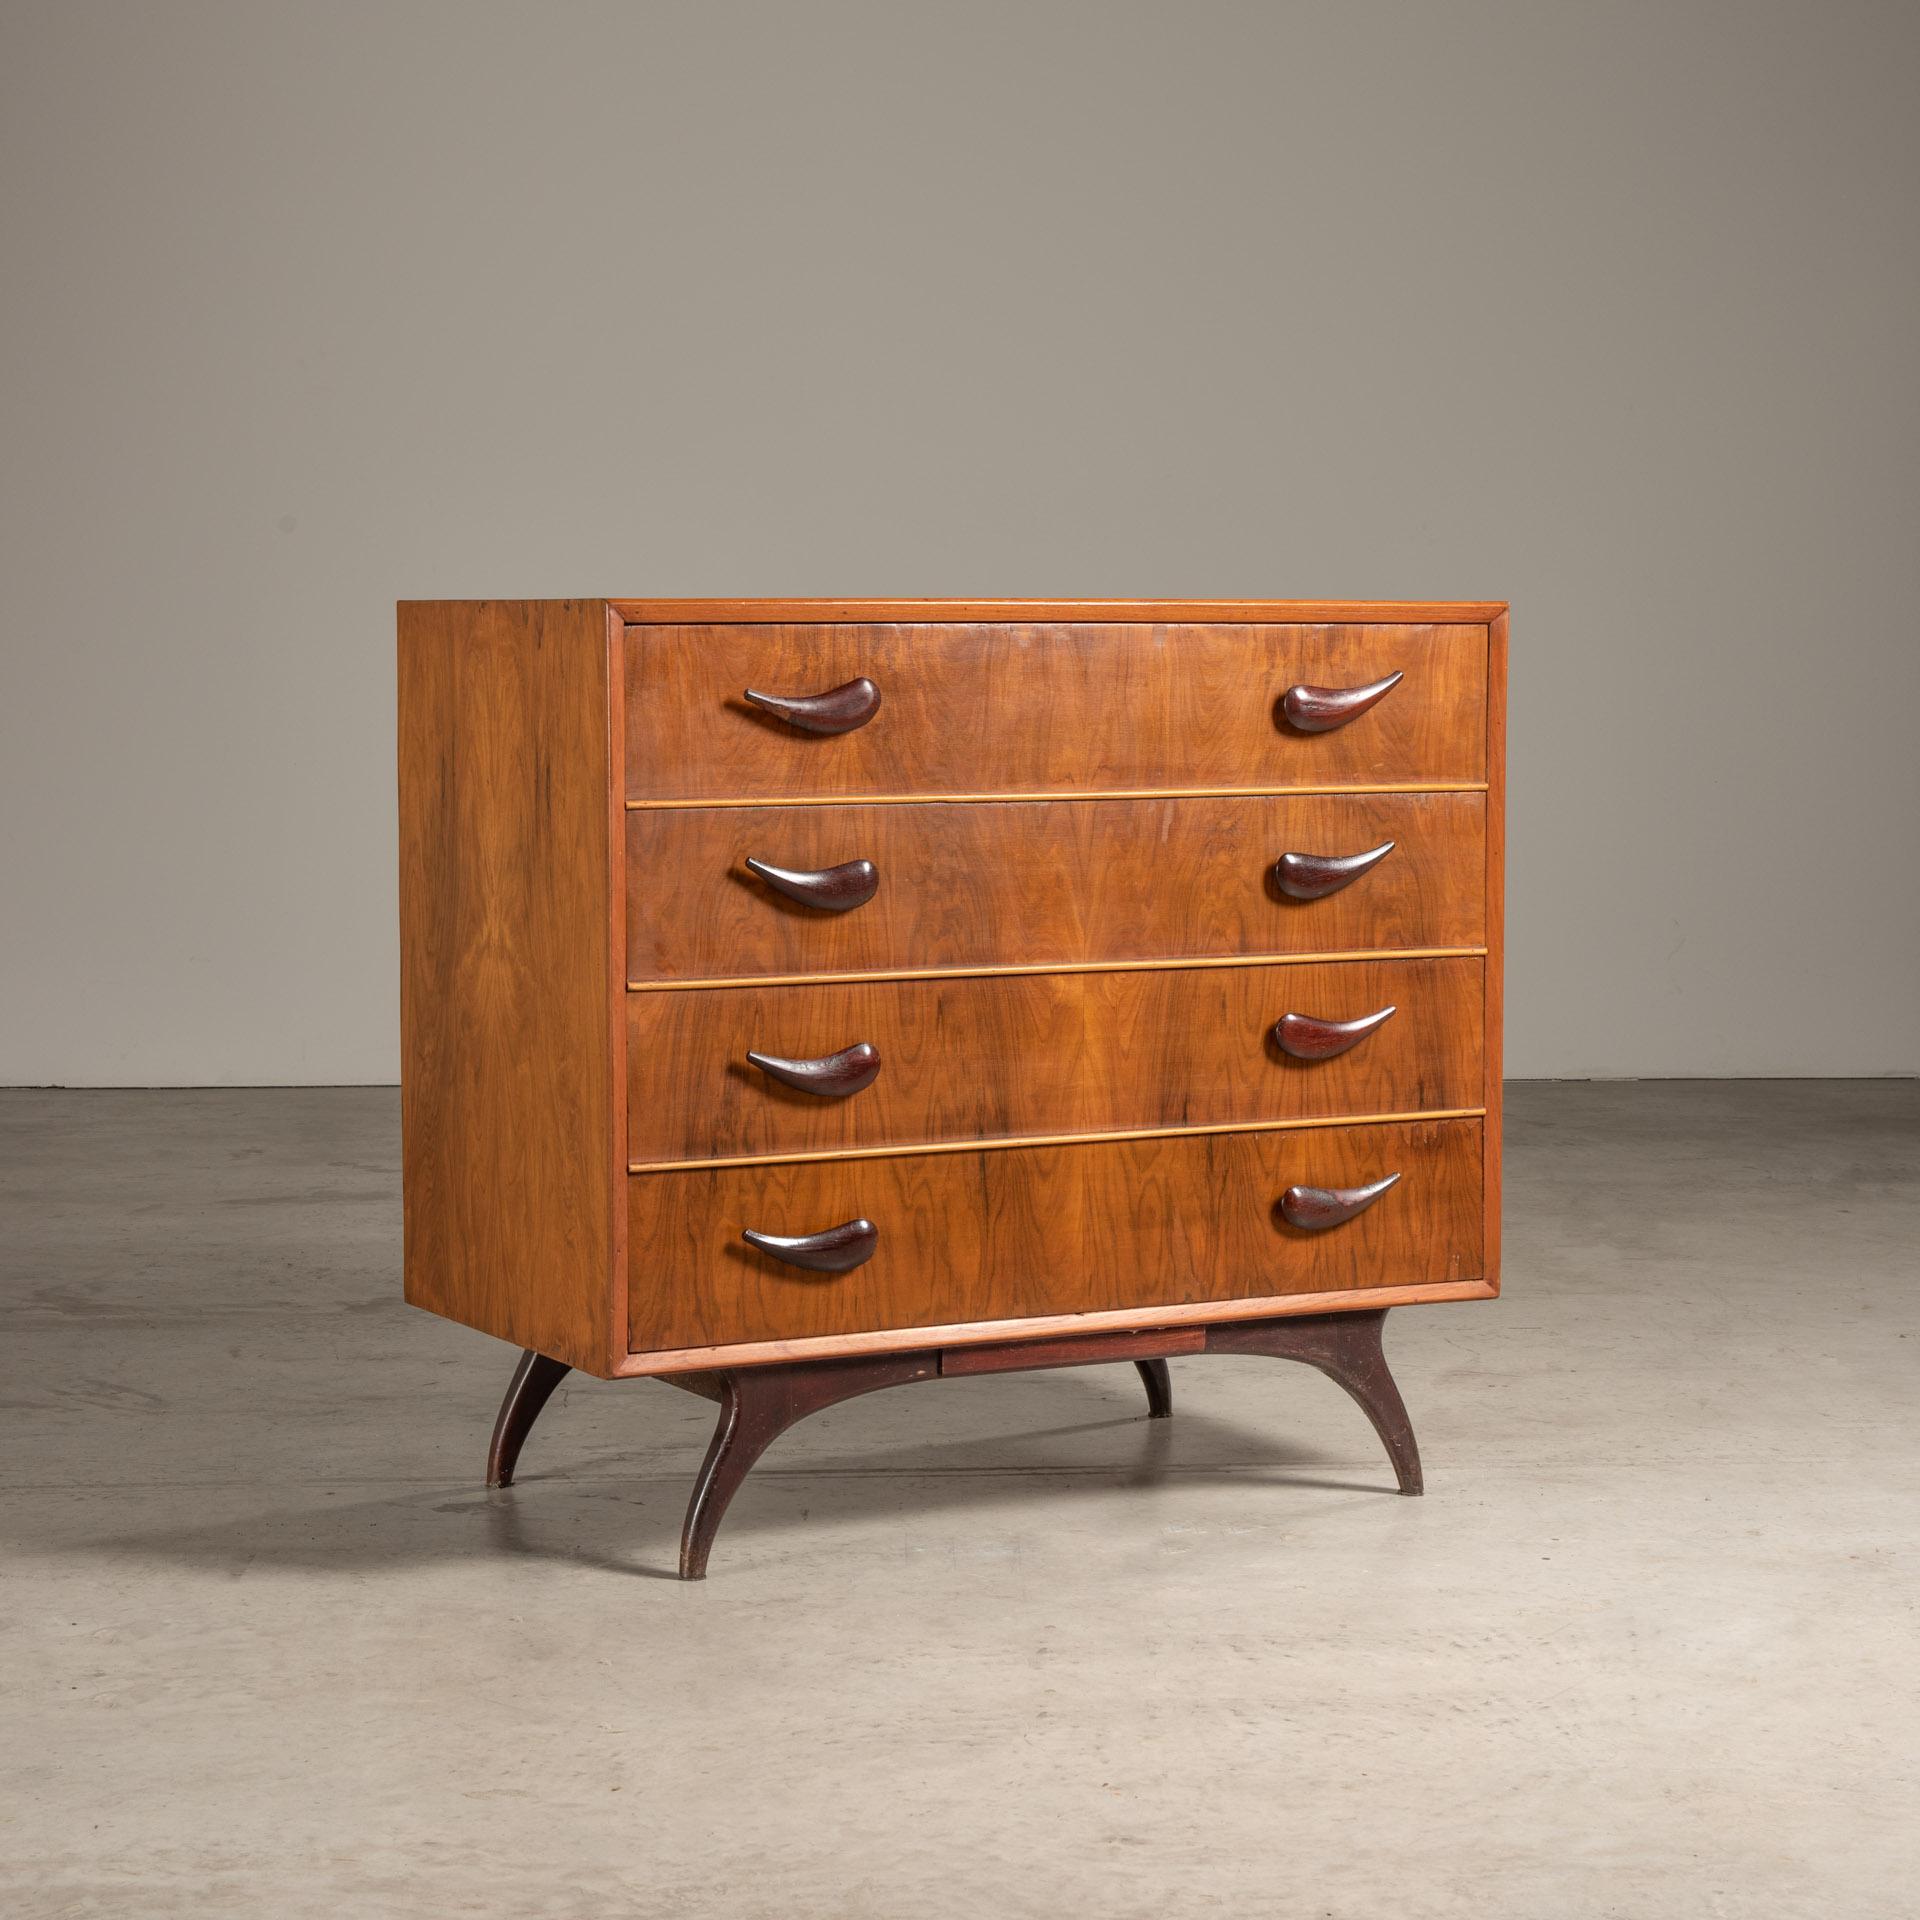 Diese Kommode ist ein klassisches Beispiel für brasilianische Möbel aus der Mitte des 20. Jahrhunderts, hergestellt von Móveis Cimo. Dieses Stück verkörpert mit seinen klaren Linien, der Verwendung von warmem Holz und seinem funktionalen Design die